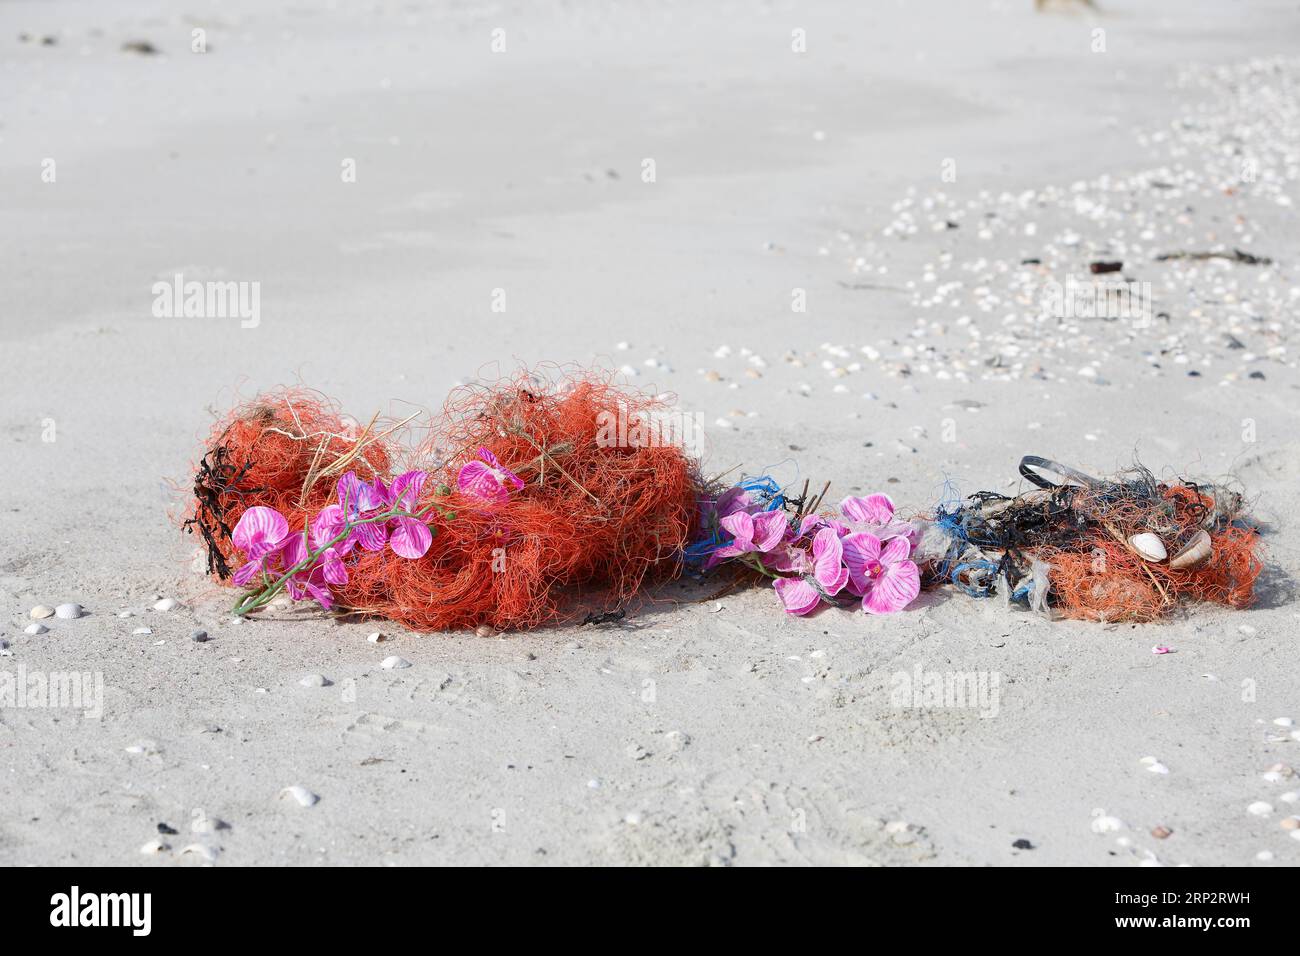 Rifiuti marini lavati sulla spiaggia, impatto umano sull'ecosistema marino, corde e plastica, Minsener Oog, bassa Sassonia, Germania Foto Stock